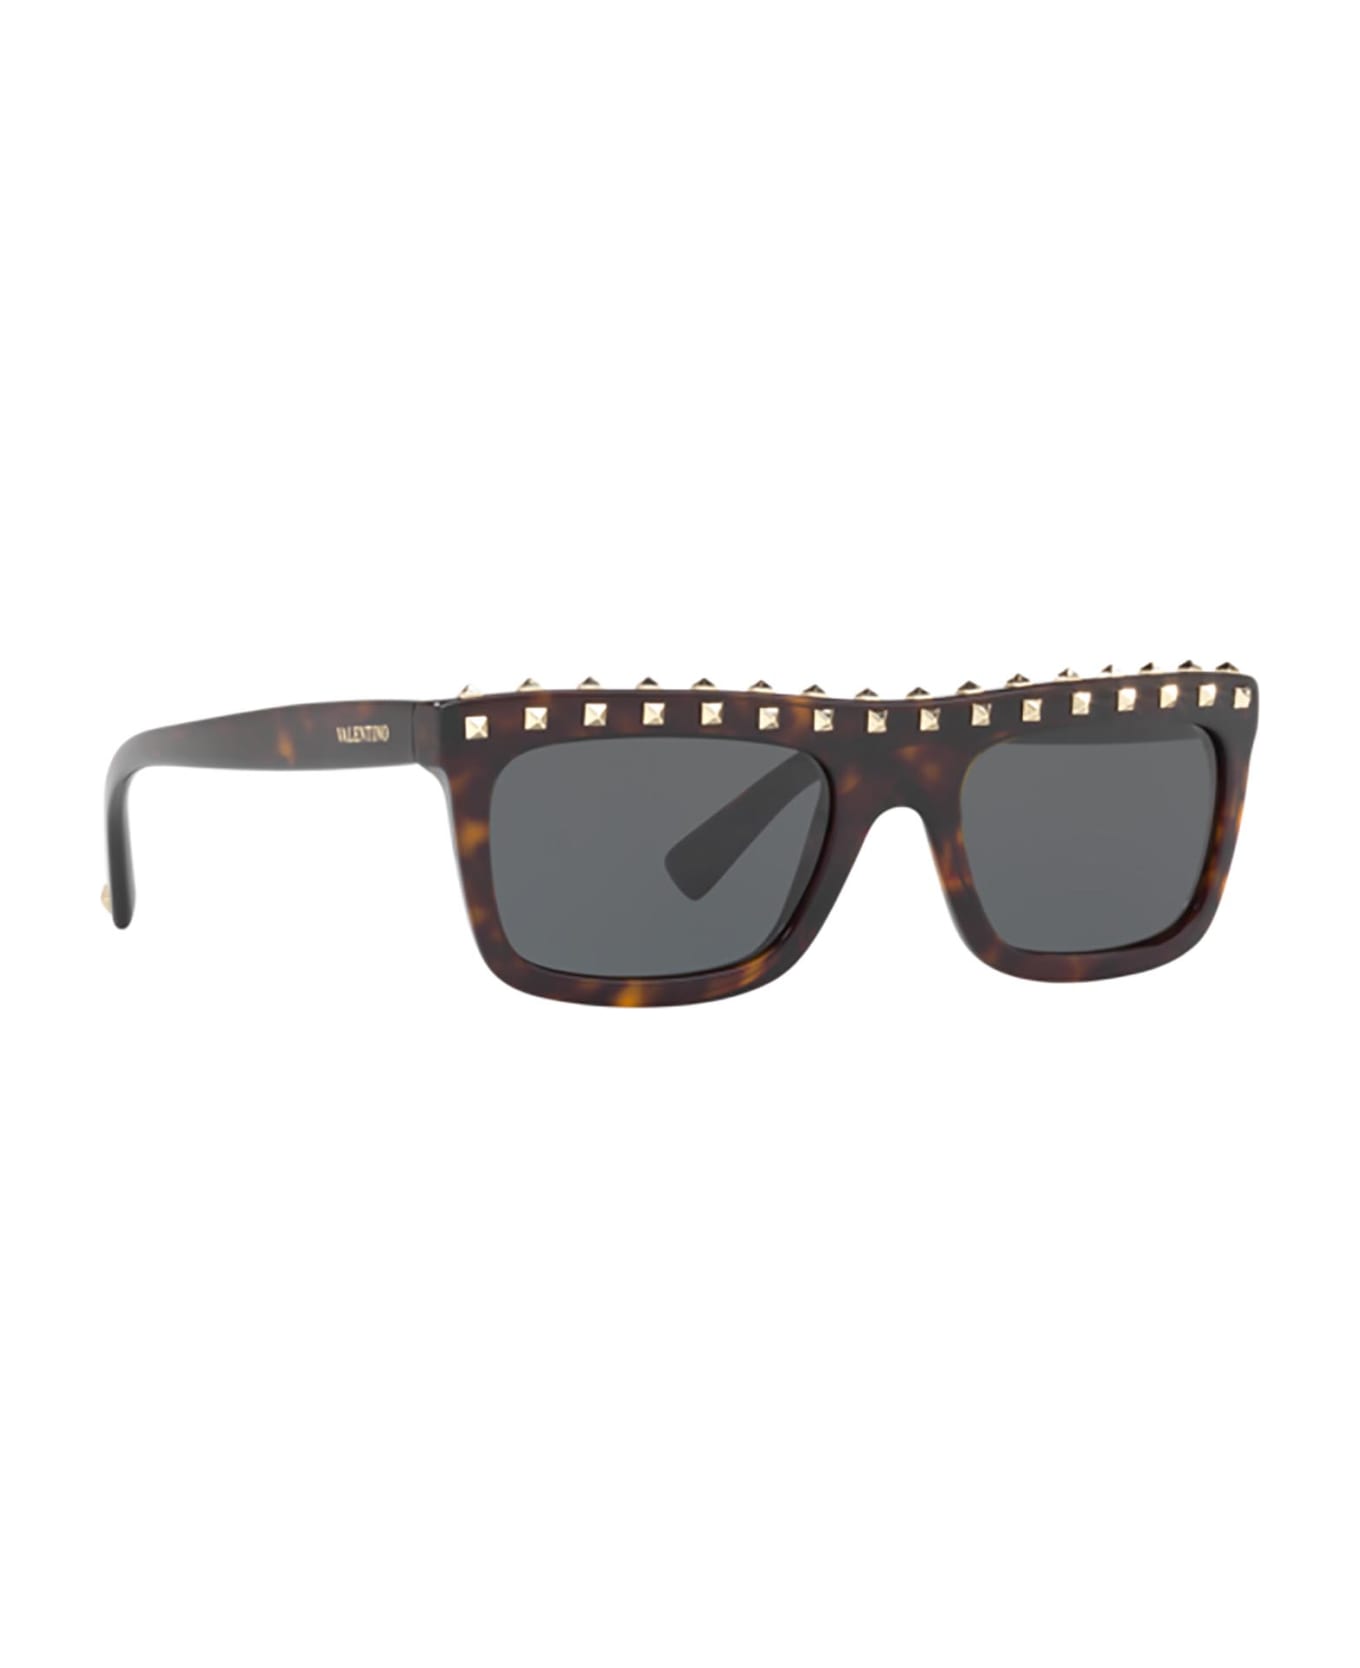 Valentino Eyewear Va4010 Havana Sunglasses - HAVANA サングラス